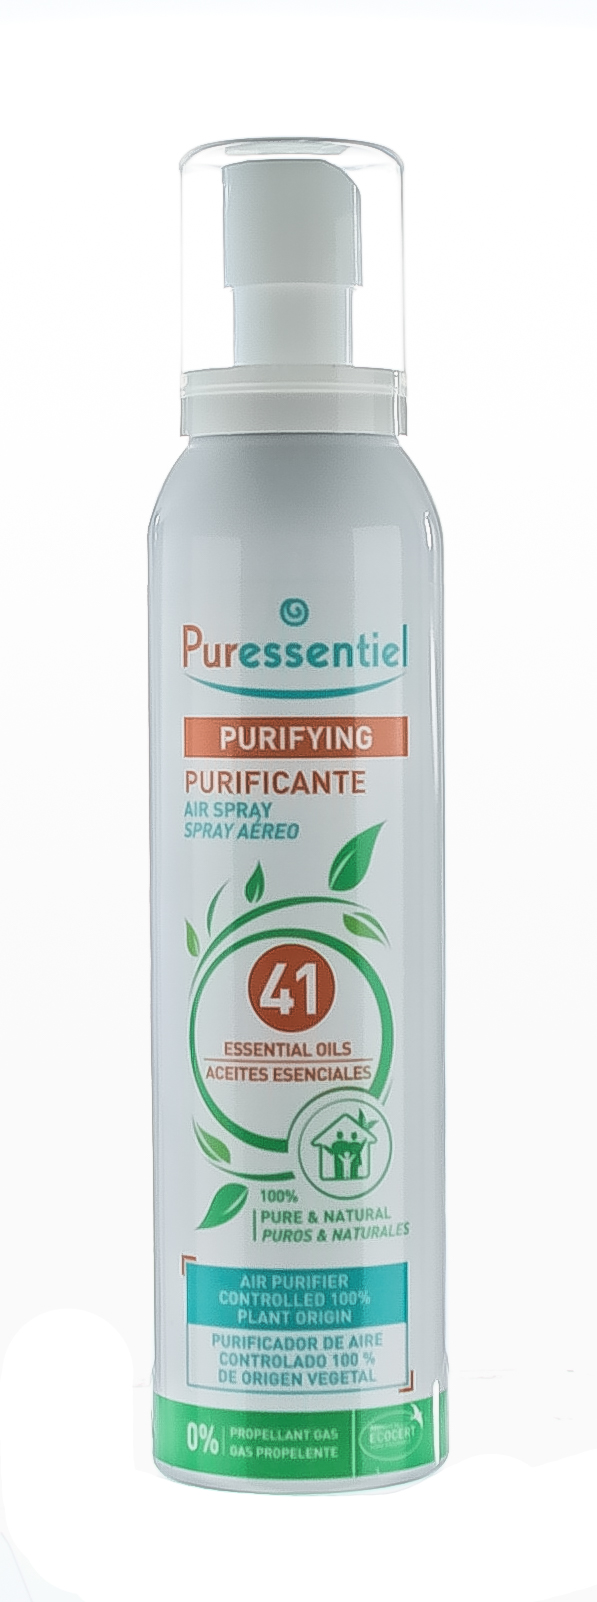 Puressentiel Спрей для воздуха "Очищающий 41 эфирное масло", 200 мл (Puressentiel, Очищение) от Socolor